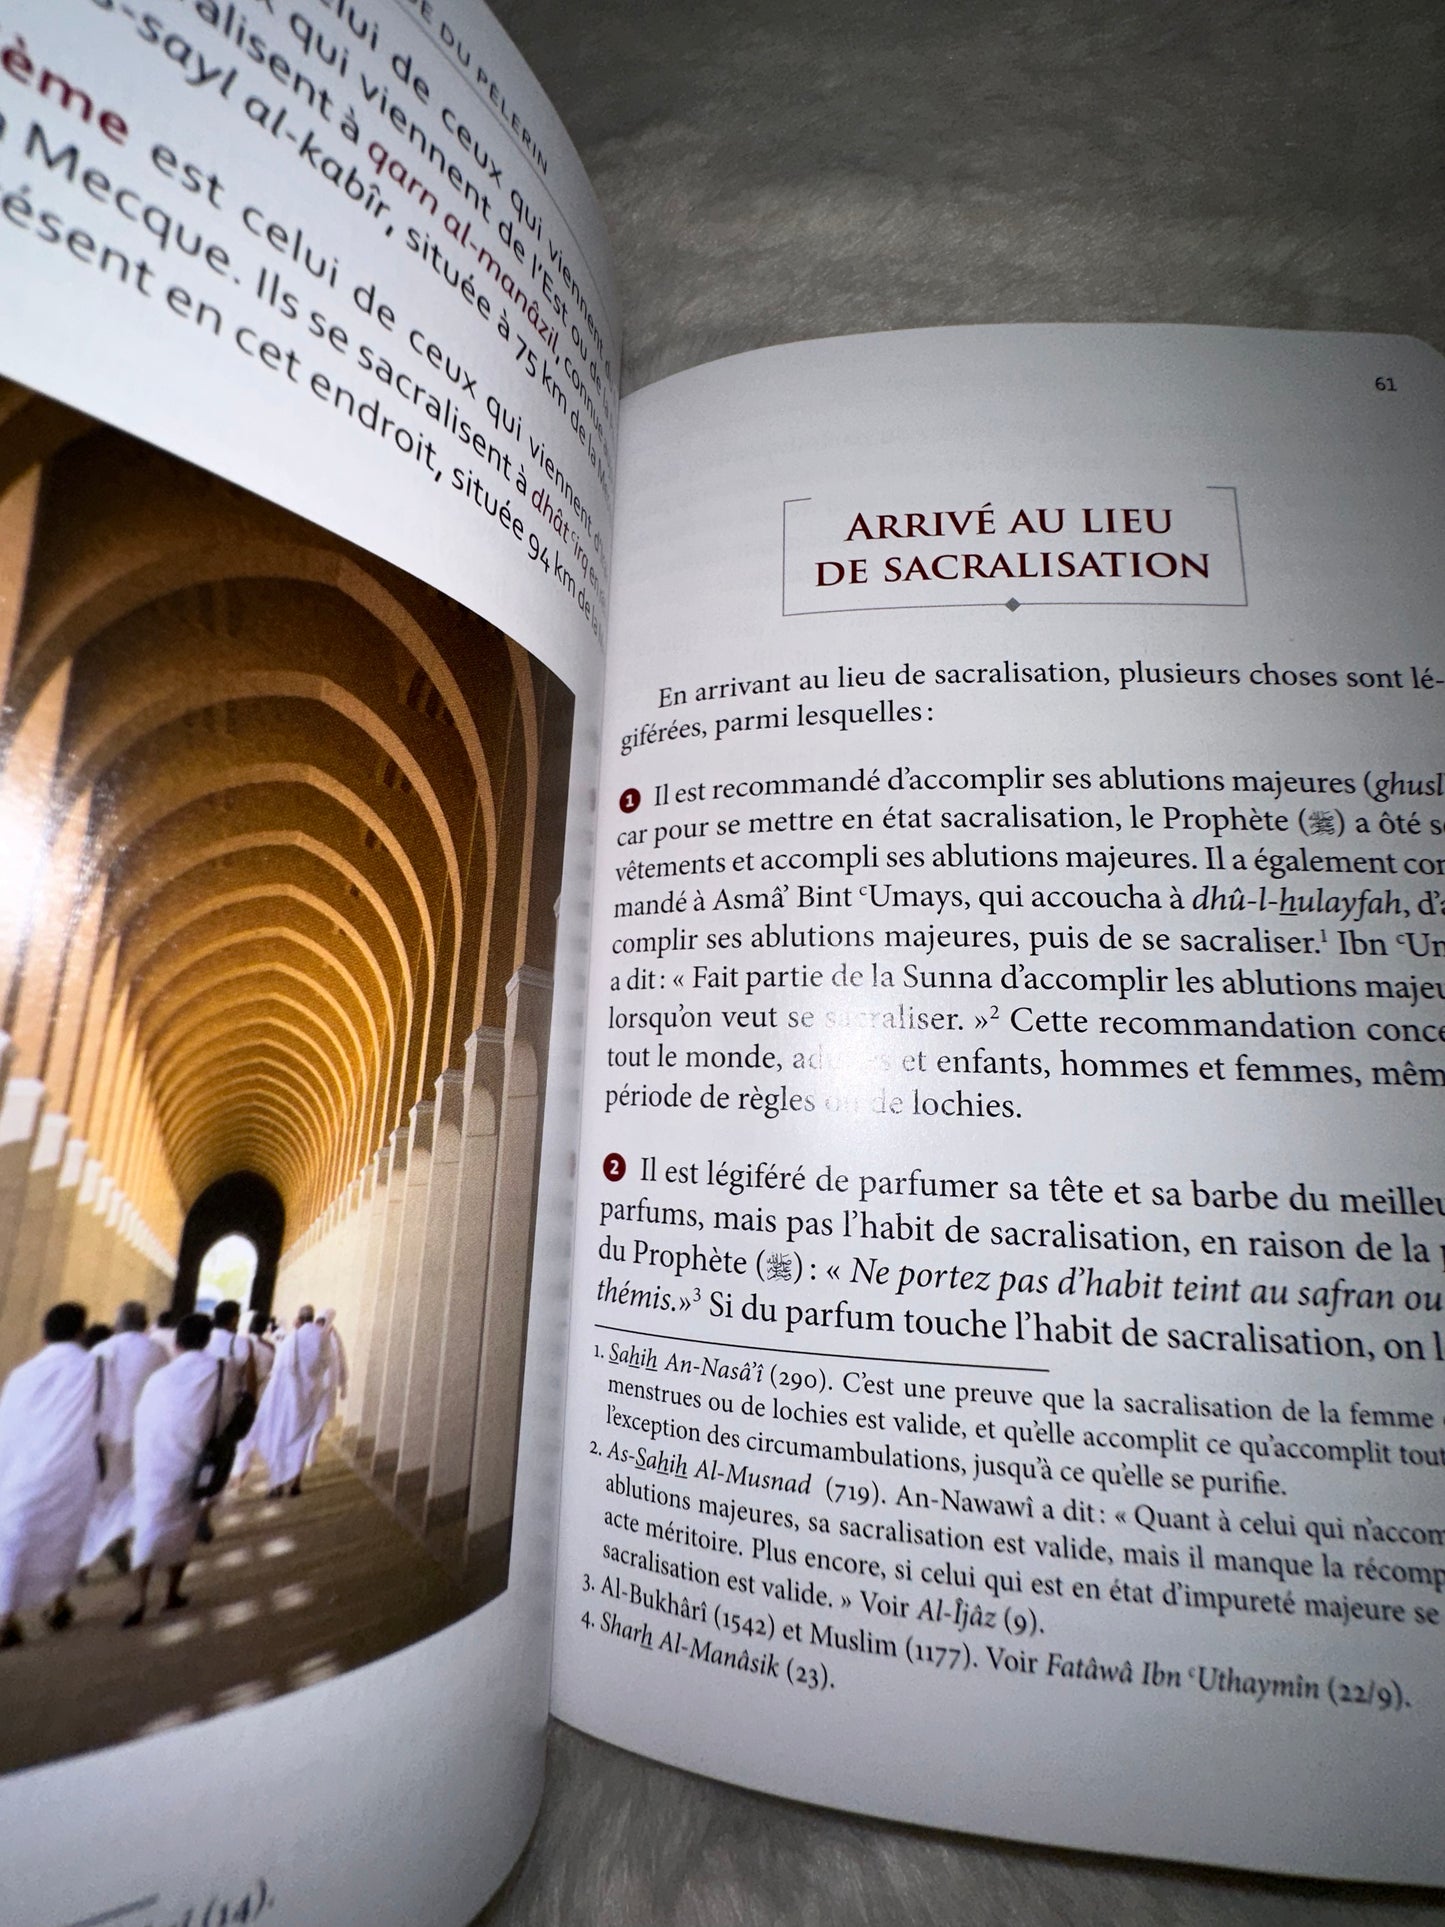 Le Guide du pèlerin pour tout savoir sur le pèlerinage (Hajj) et la 'Umra, conseils pratiques, et astuces